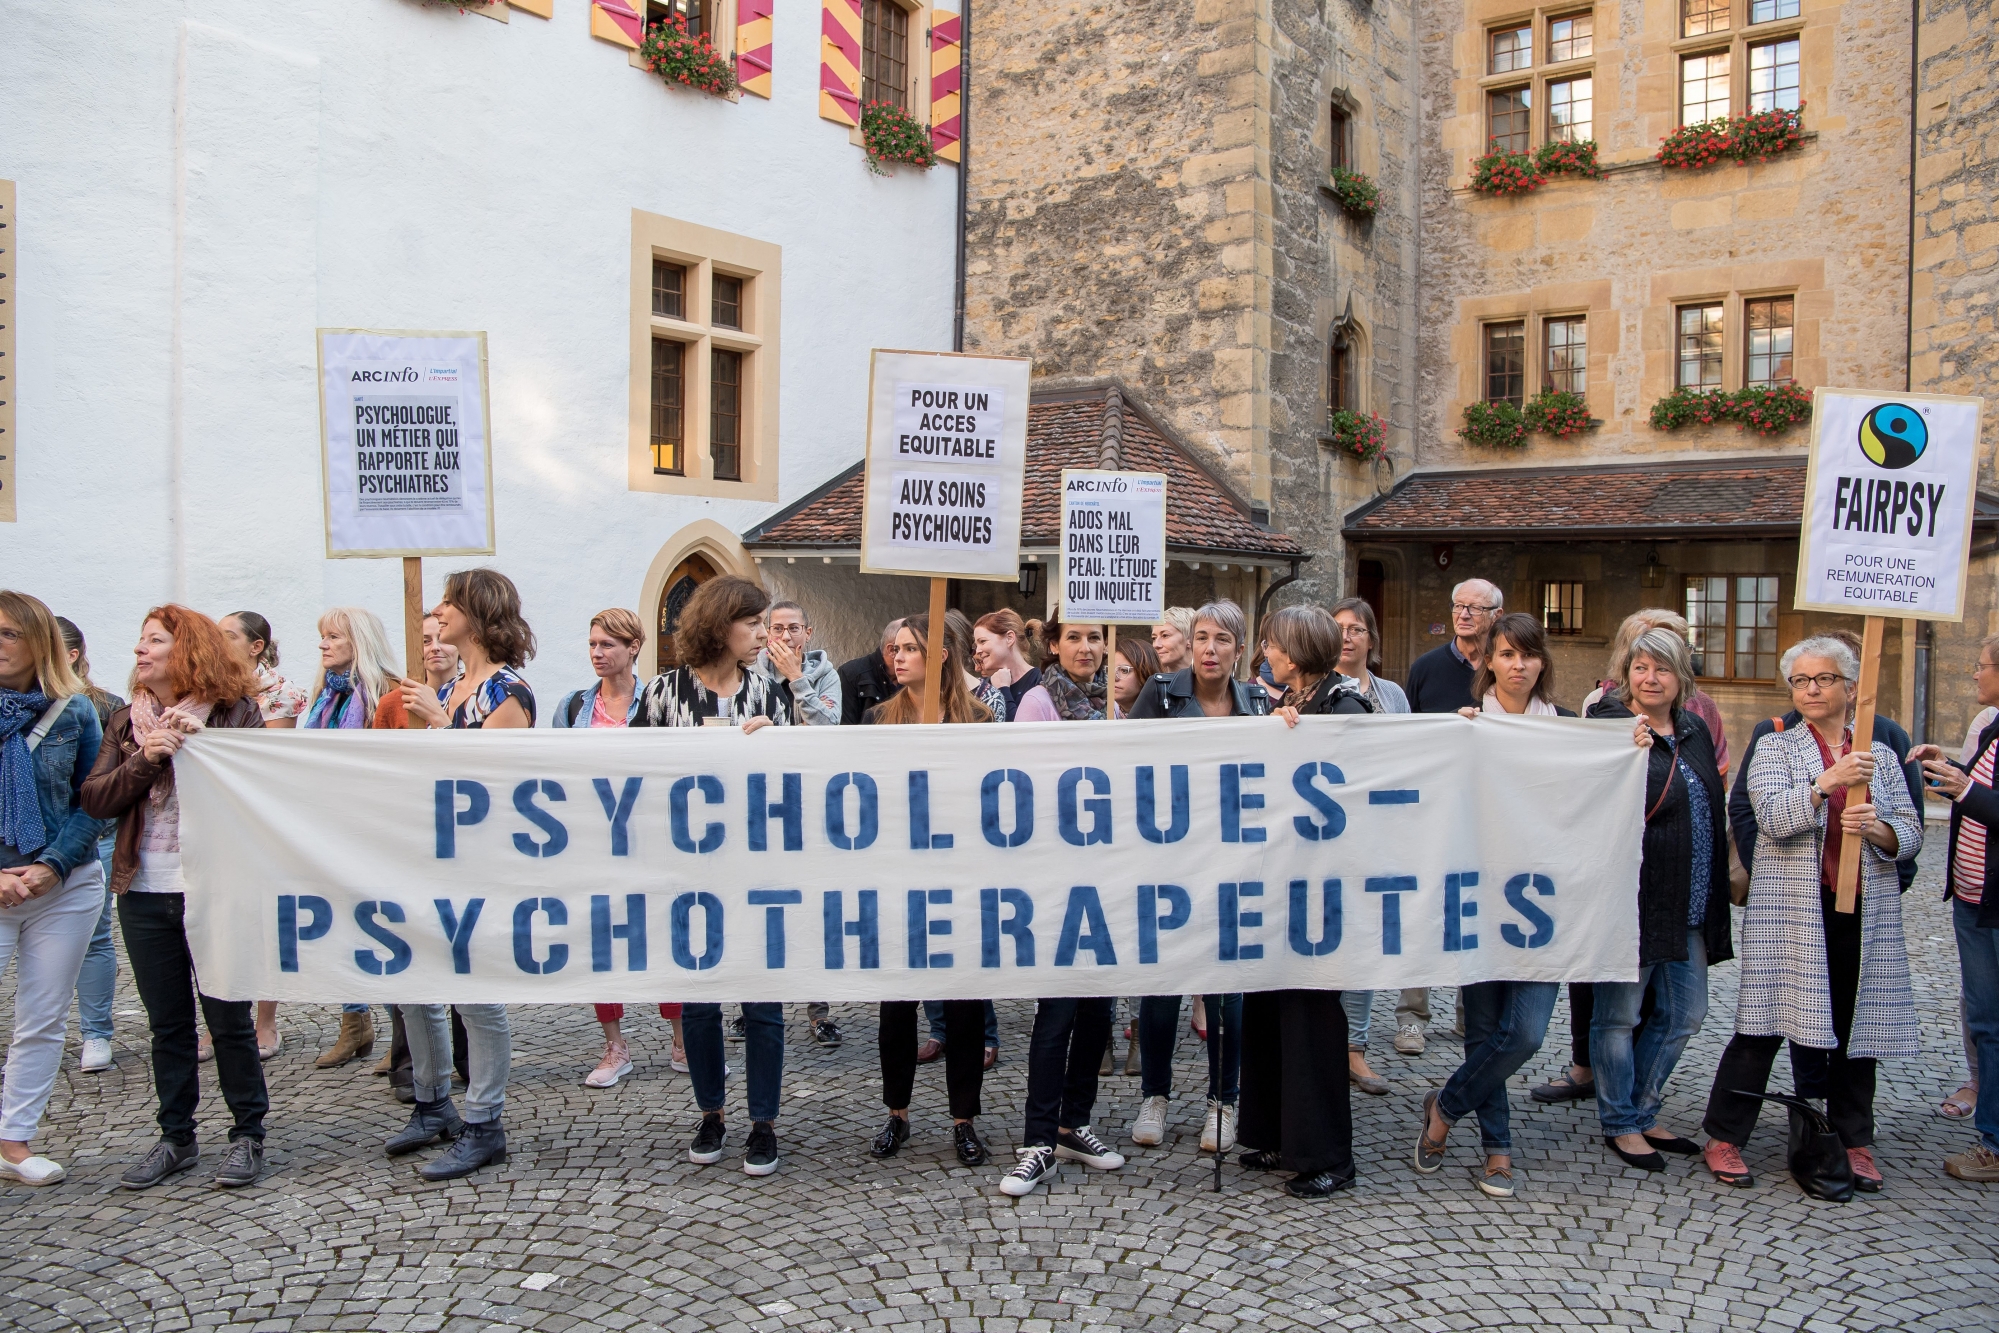 Les psychologues neuchâtelois manifestaient déjà en septembre 2018 dans la cour du Château pour réclamer un meilleur accès aux soins psychiques.